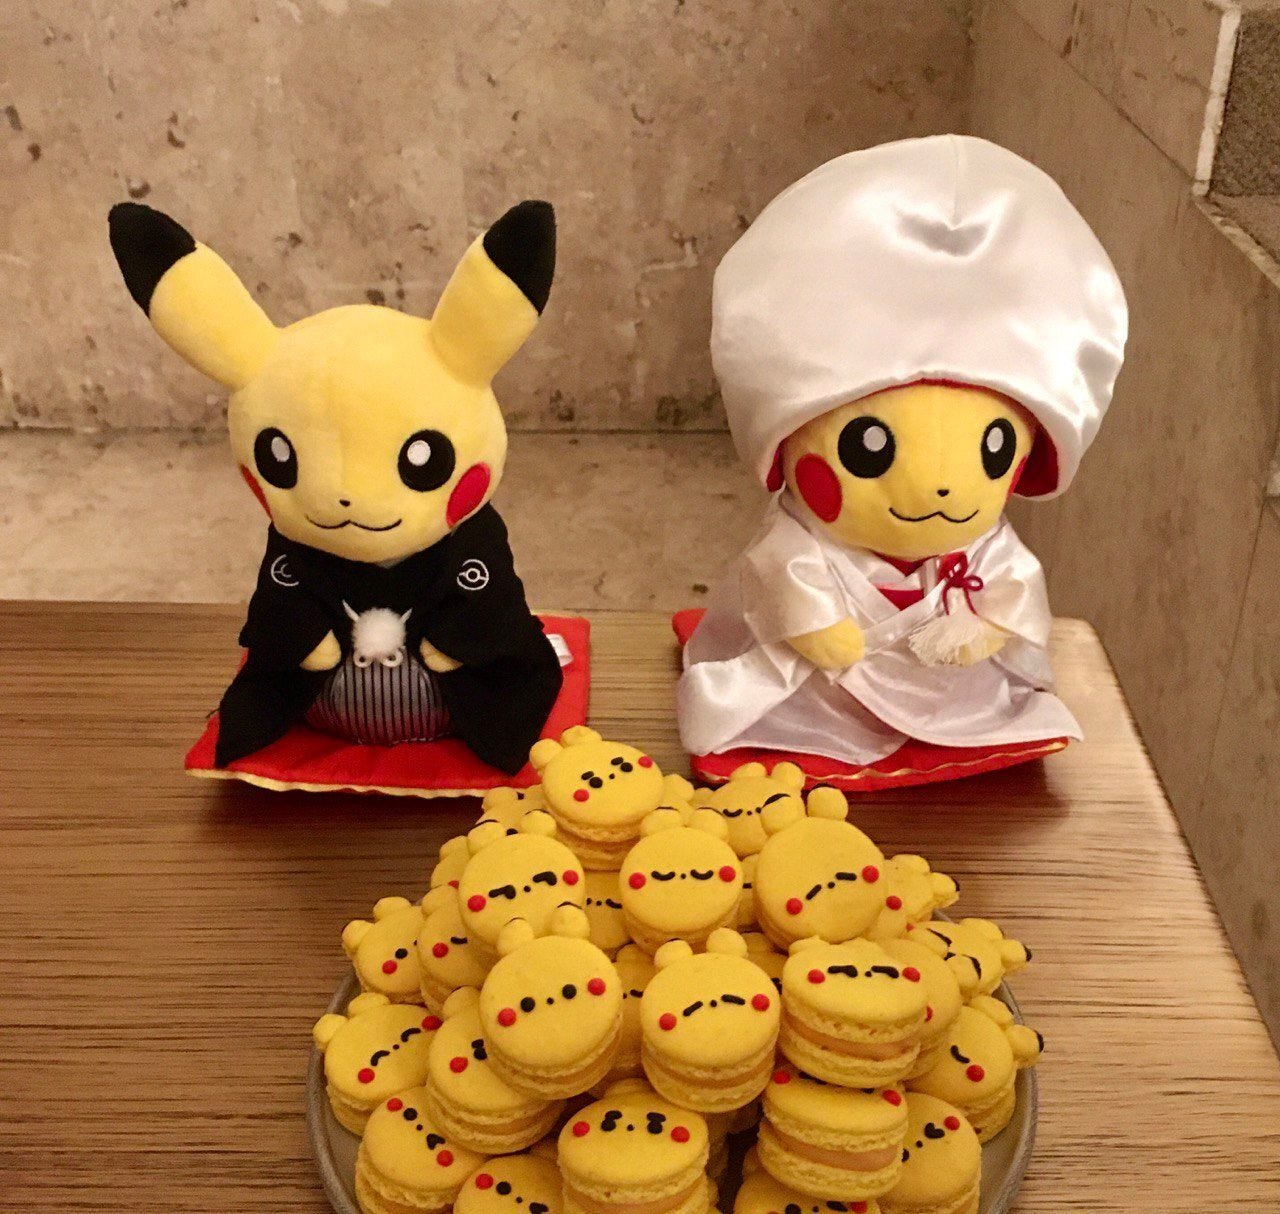 Foto de dois Pikachus de pelúcia com trajes tradicionais japoneses de casamento. Em frente a eles está um prato com macarrons amarelos decorados com carinhas do Pokemón.